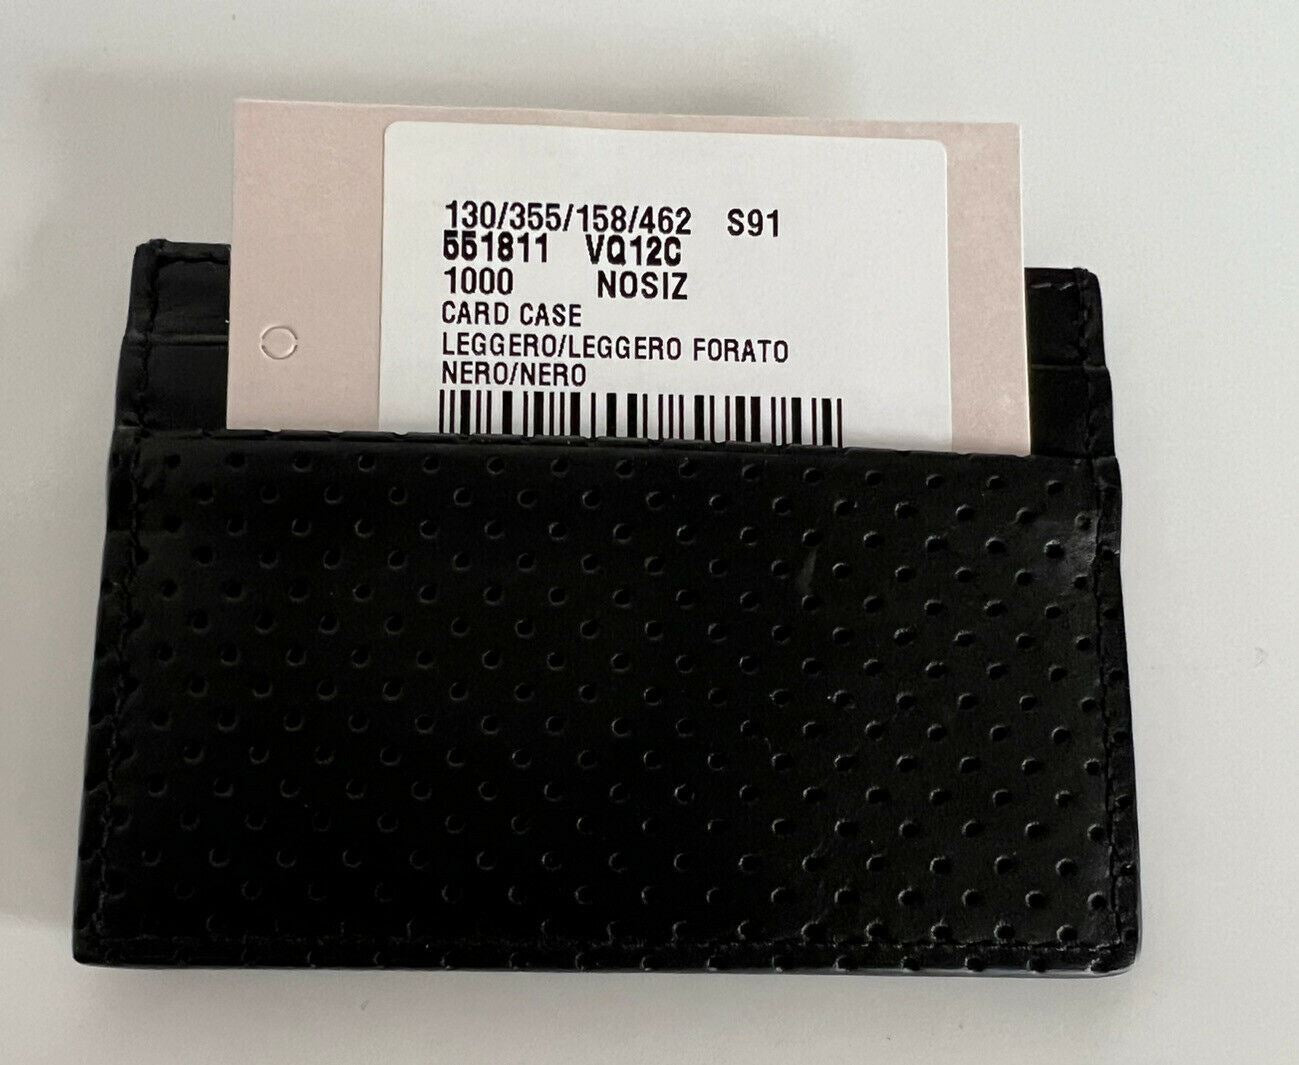 Мужской кожаный футляр для визиток Bottega Veneta, черный 551811, Сделано в Италии, NWT 250 долларов США 